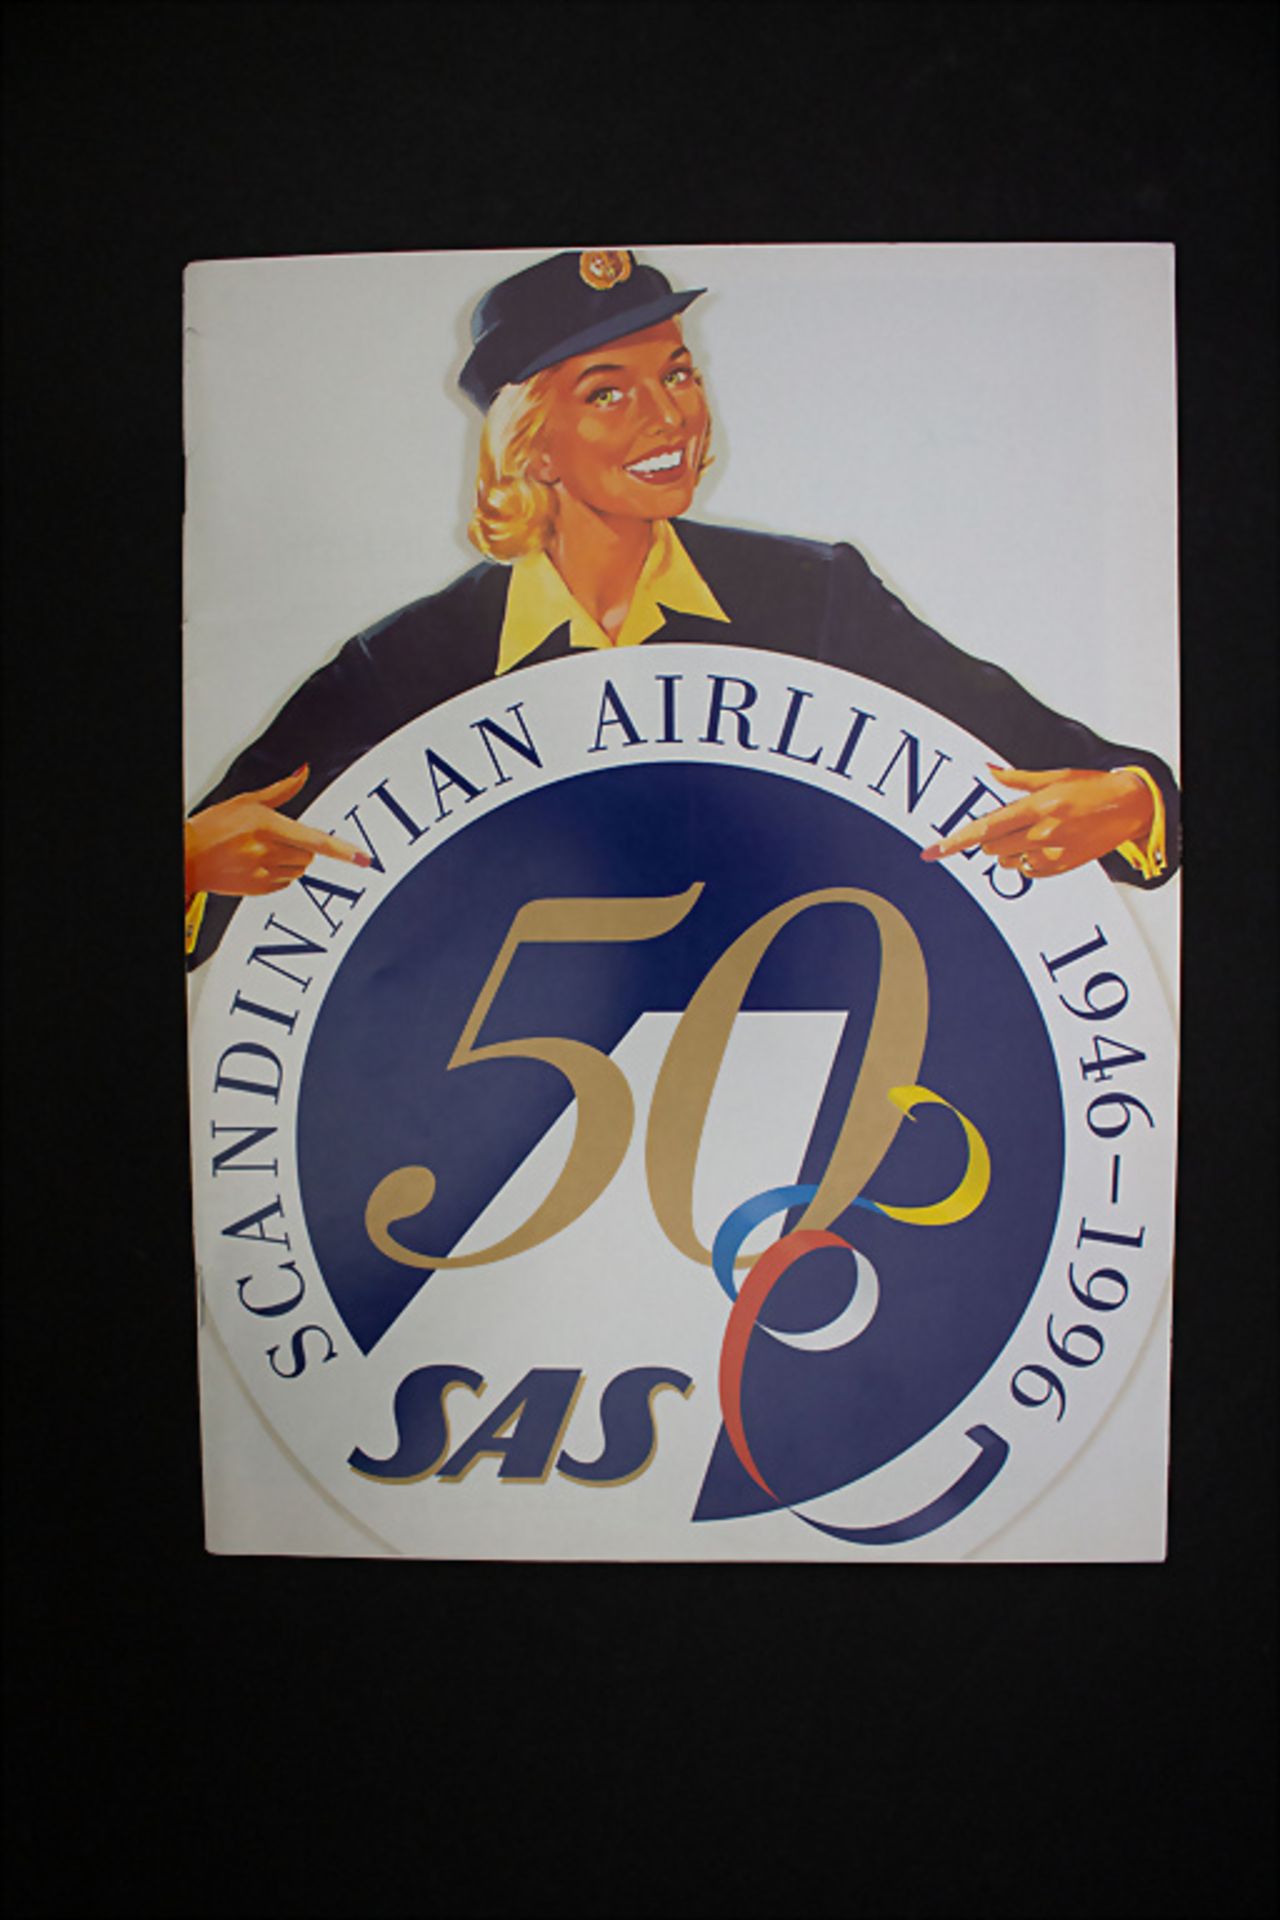 Prospekt 'Scandinavian Airlines 1946-1996', zum 50-Jährigen Firmenjubiläum, 1996